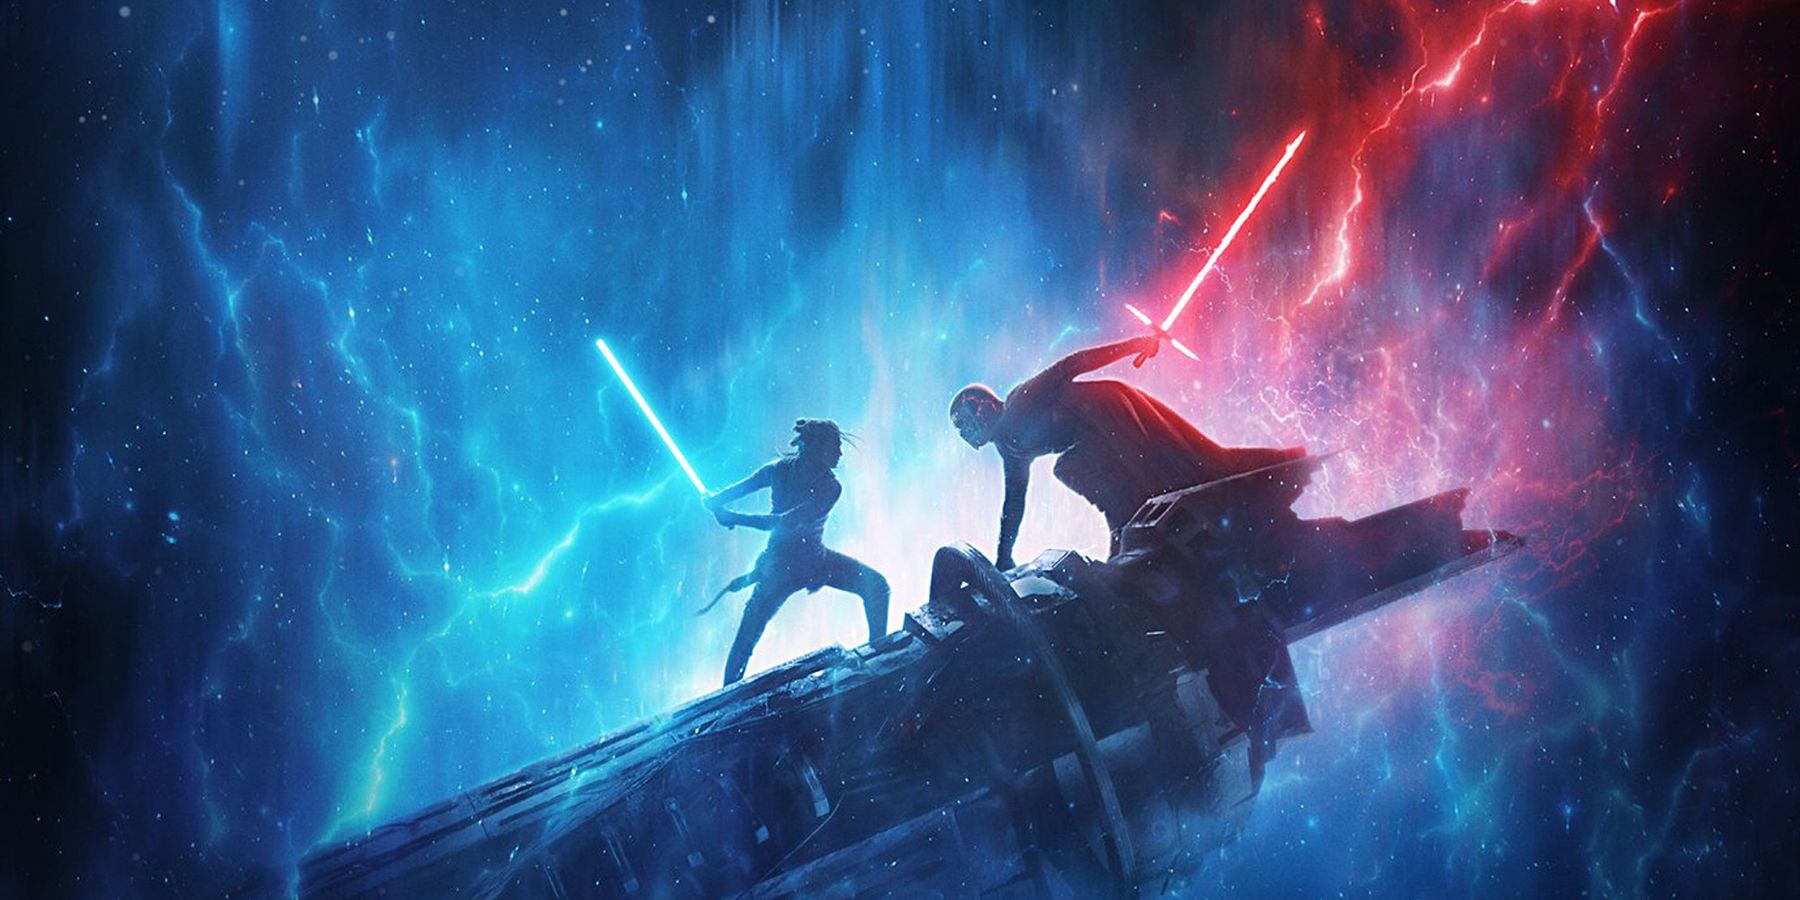 Star Wars 9 Rise of Skywalker poster